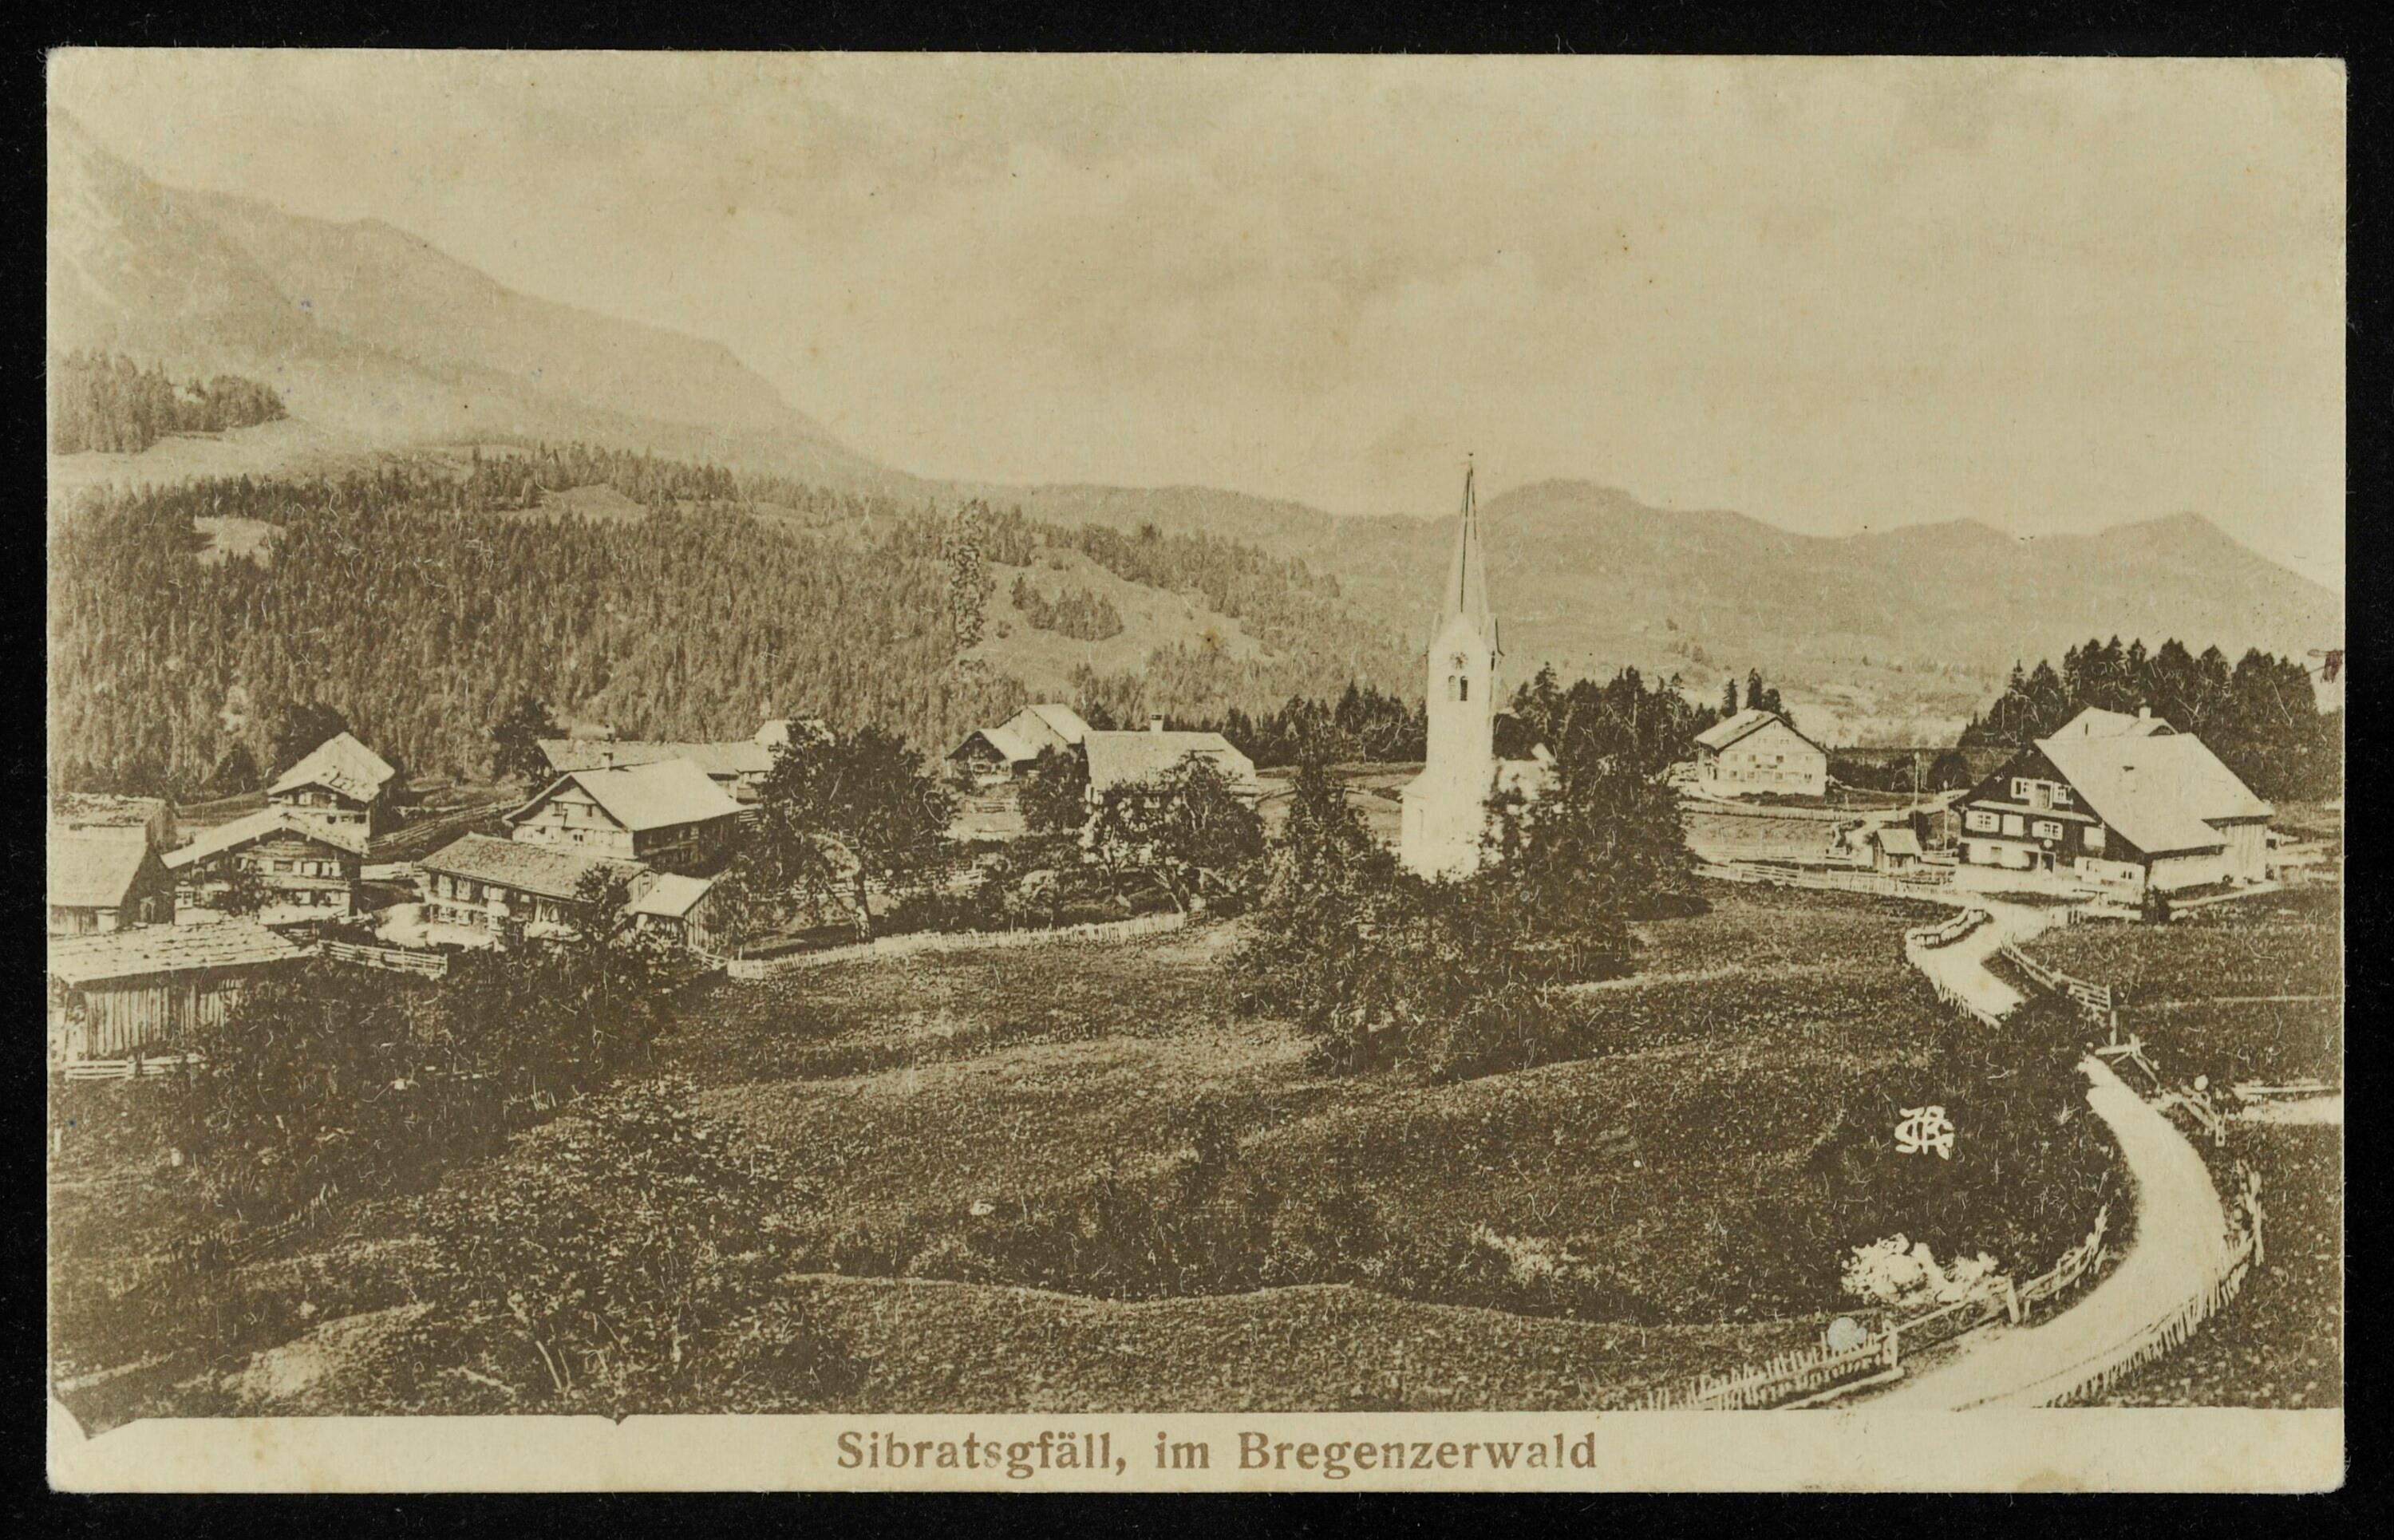 Sibratsgfäll, im Bregenzerwald></div>


    <hr>
    <div class=